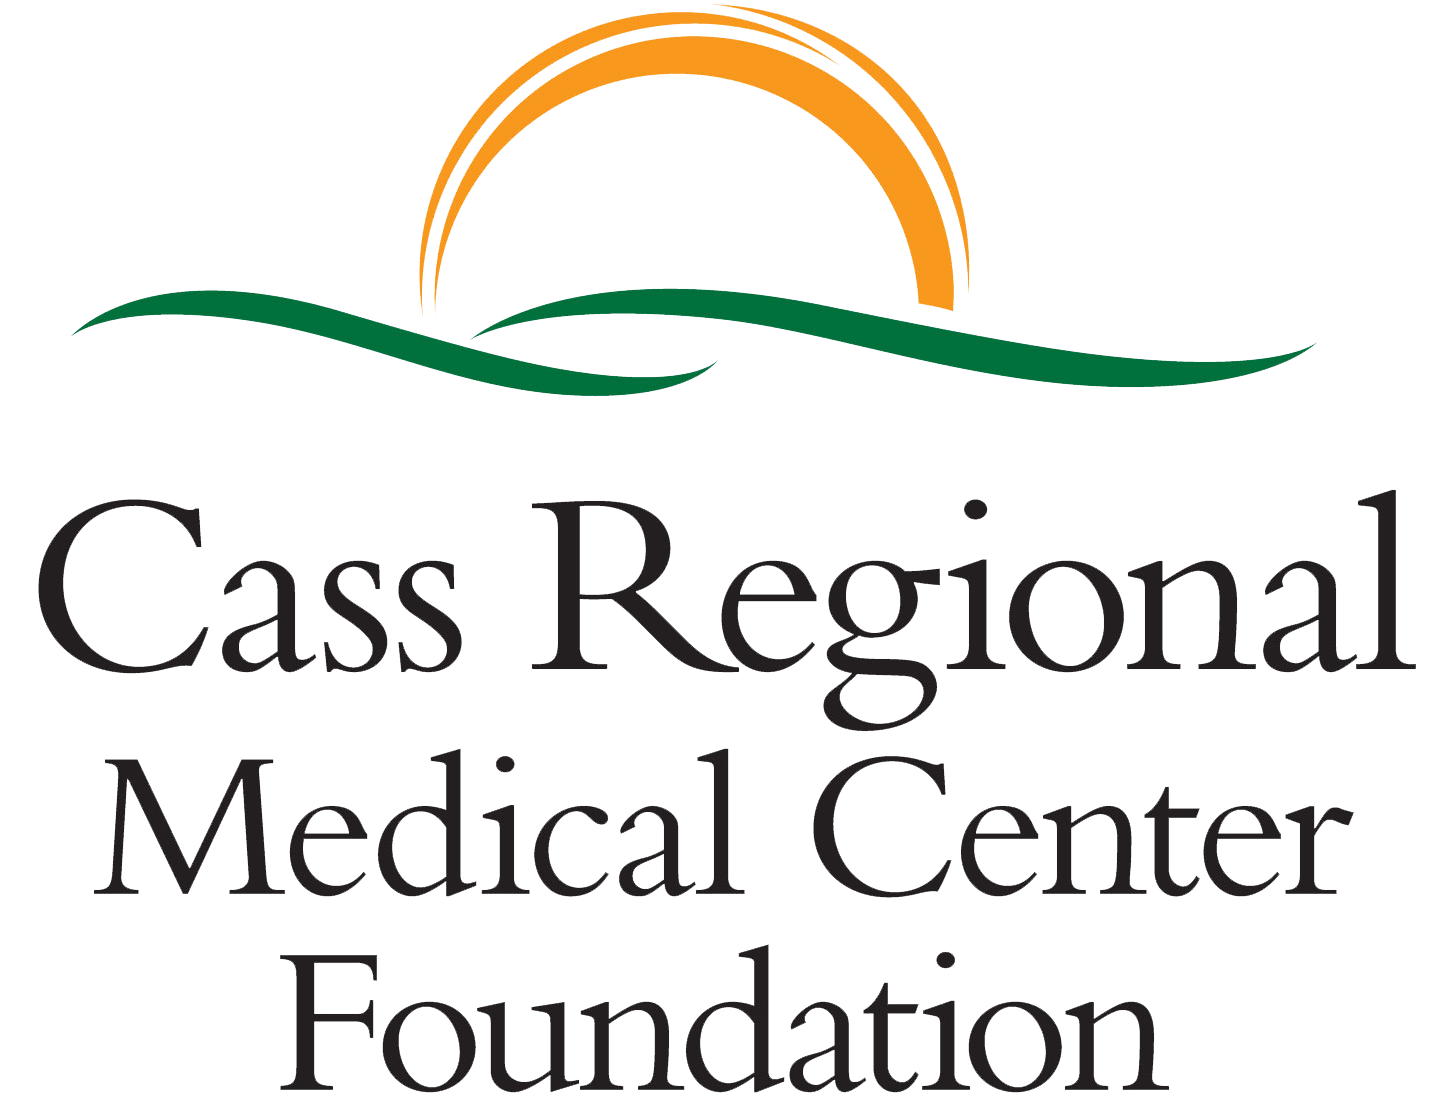 Cass Regional Medical Center Foundation logo